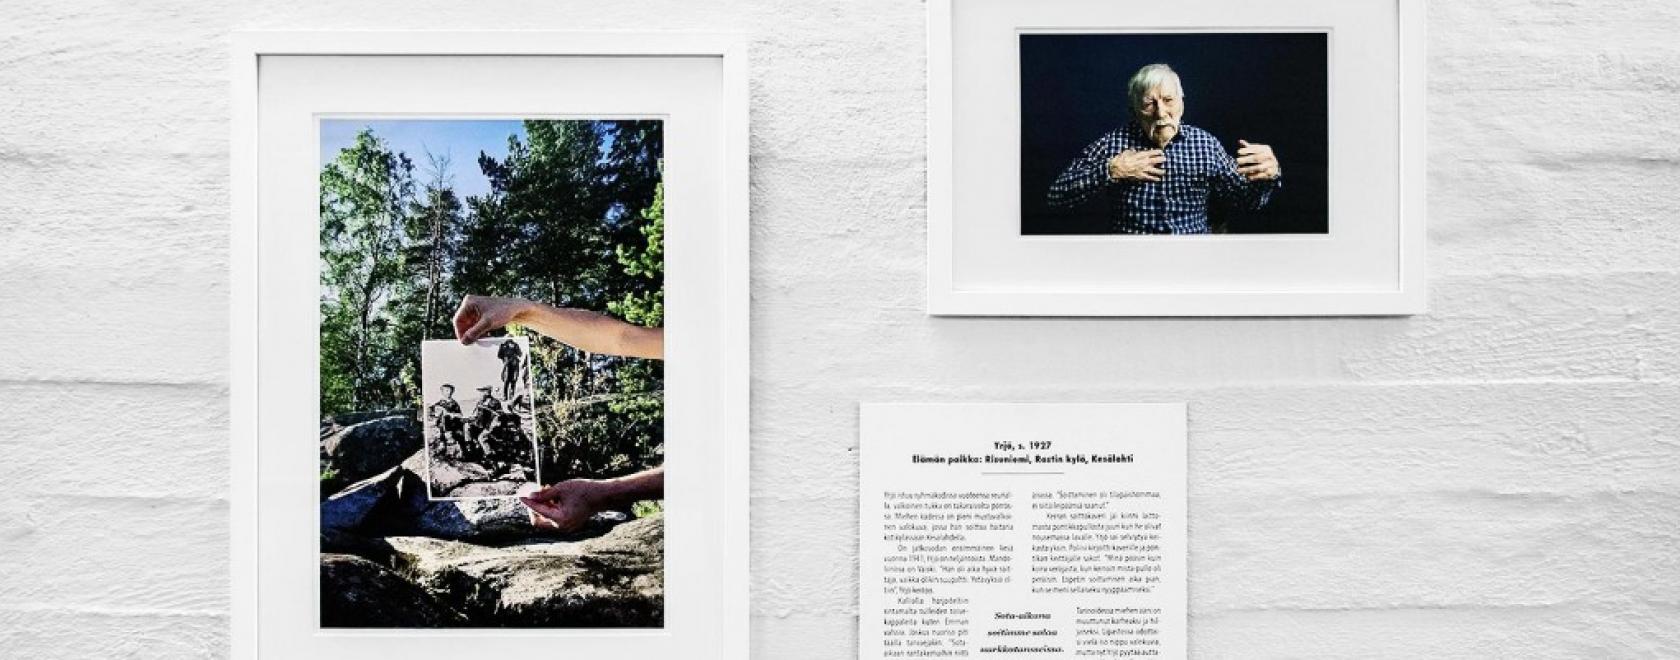 Valokuvaaja Helena Inkerin toteuttamassa Elämän paikat –näyttelyssä kuvataan ikäihmisiä heille tärkeissä paikoissa ja kerrotaan niihin liittyviä muistoja.